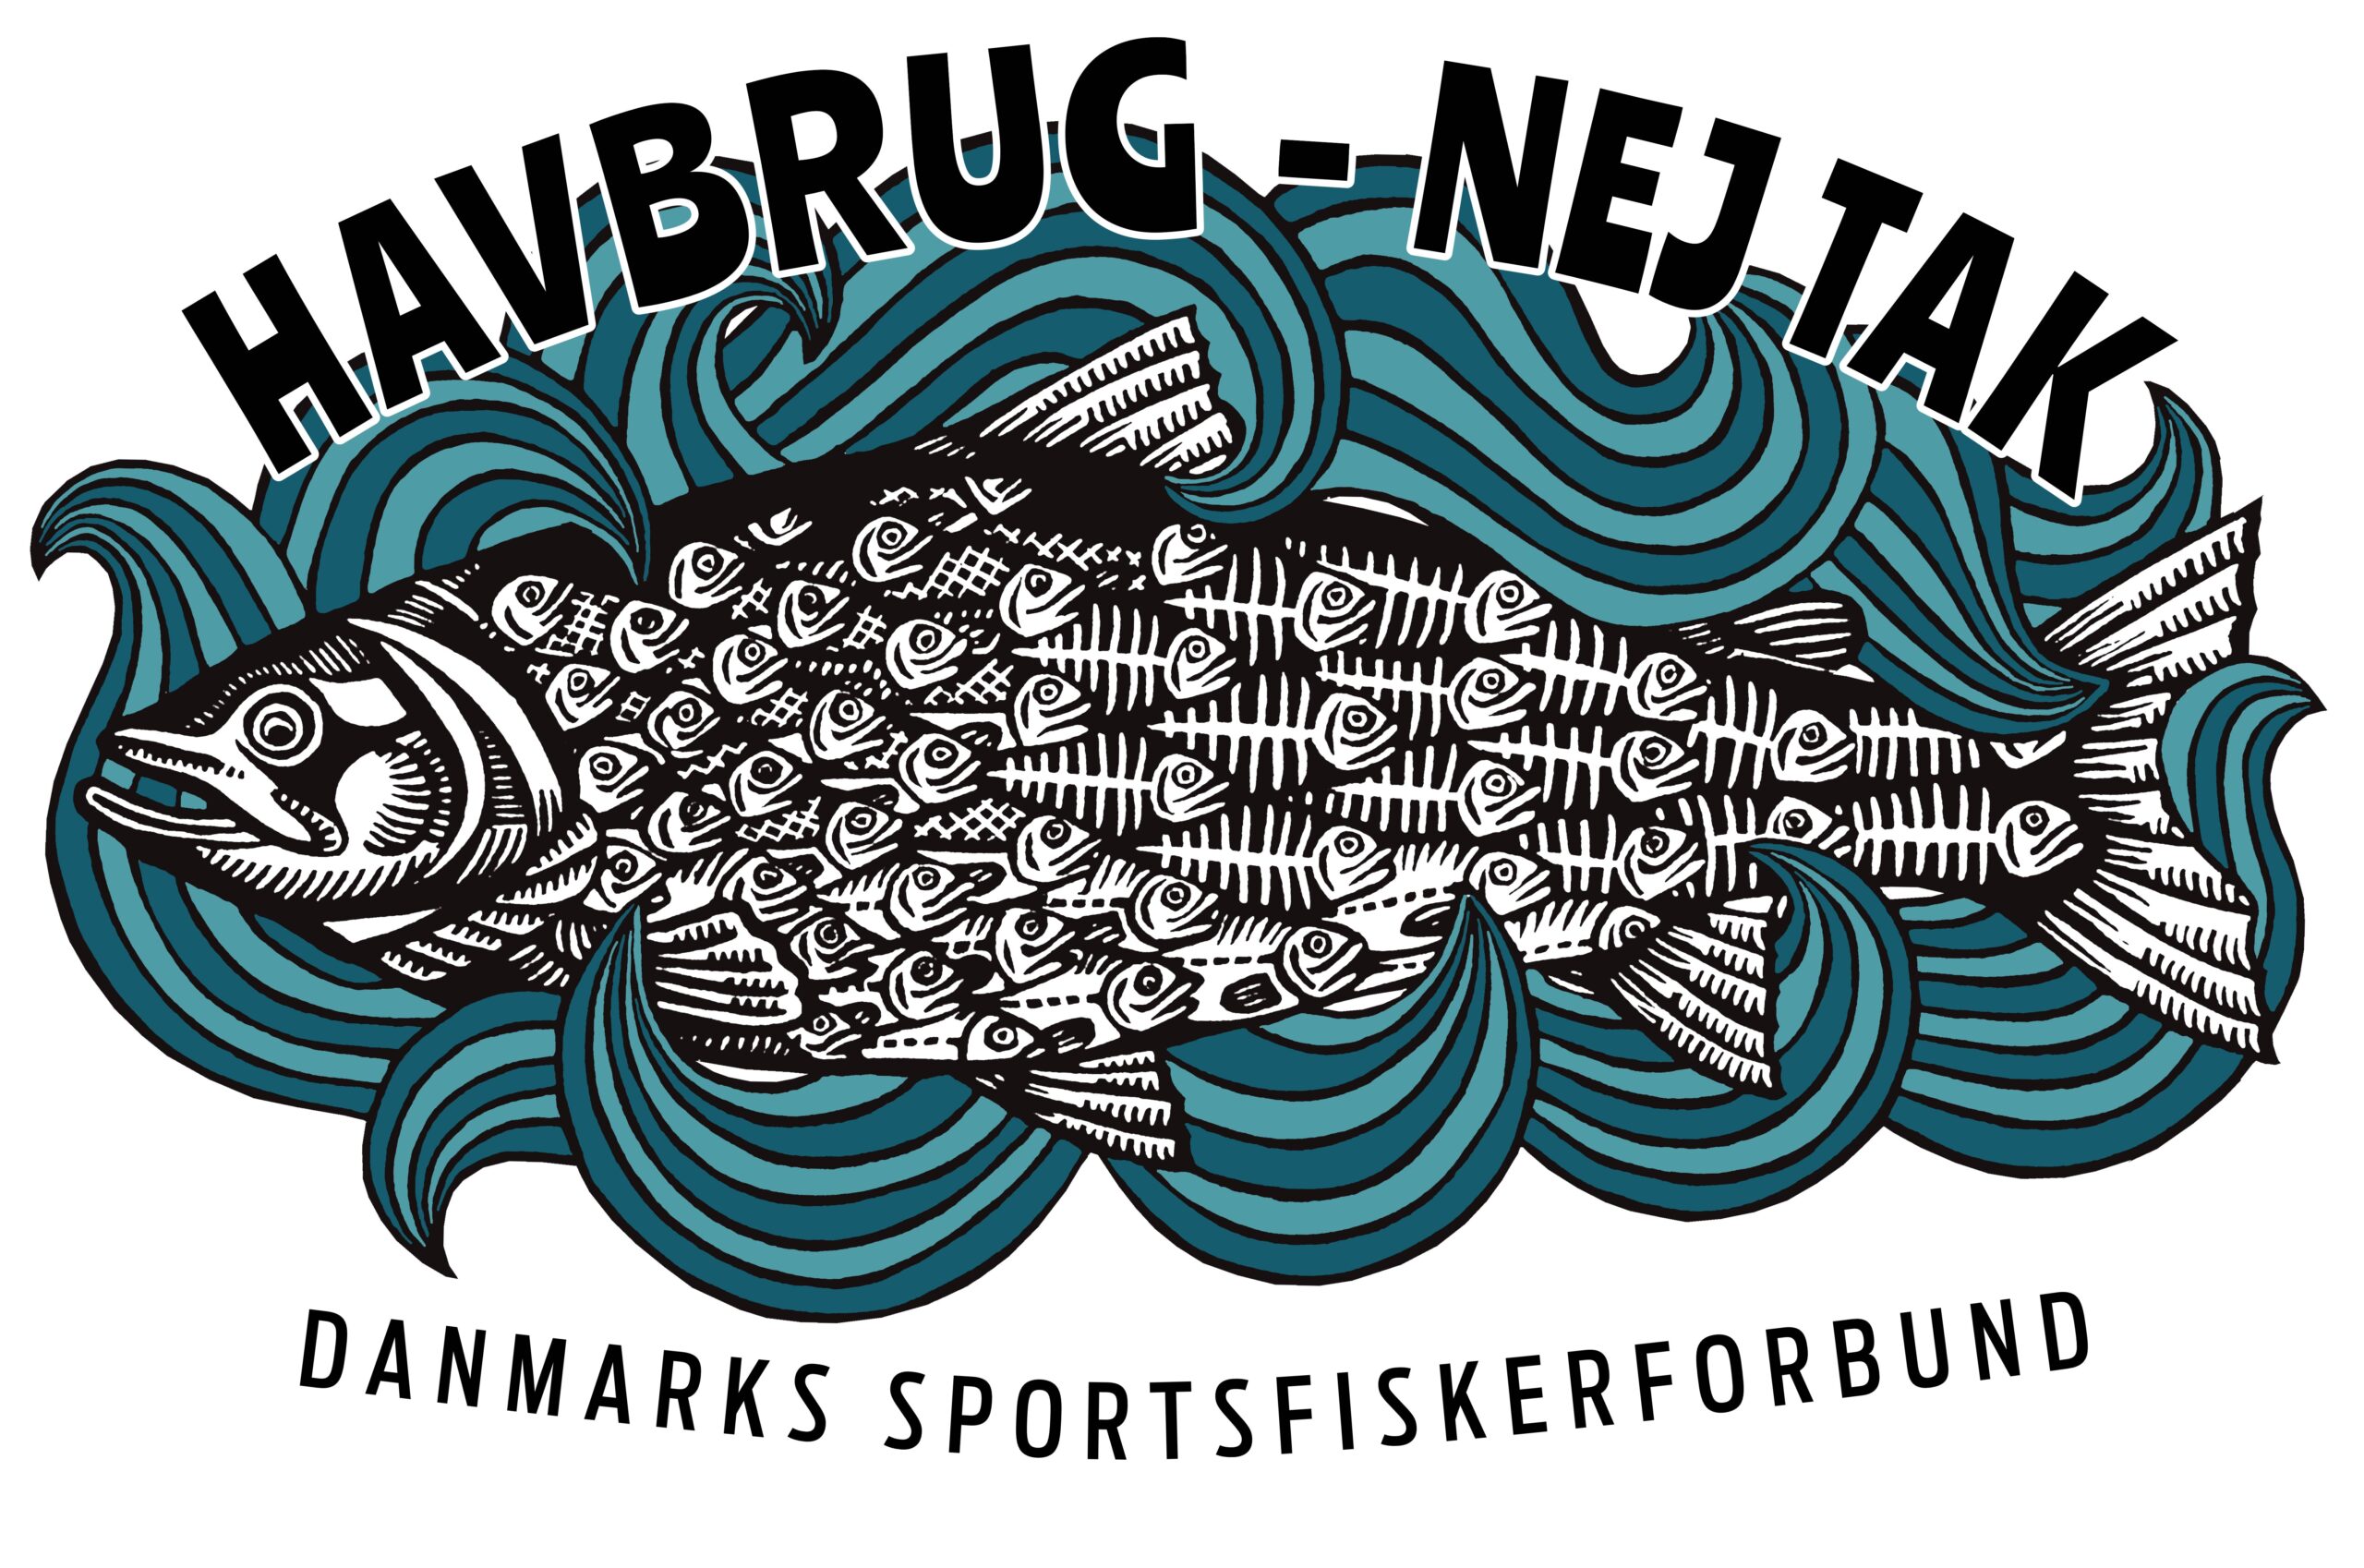 Støt Danmarks Sportfiskerforbunds kamp med havbrugene ved at melde dig ind. Øverst er det Andreas Findling-Rottem fra DSF holder foredrag om udfordringerne på de danske havbrug.